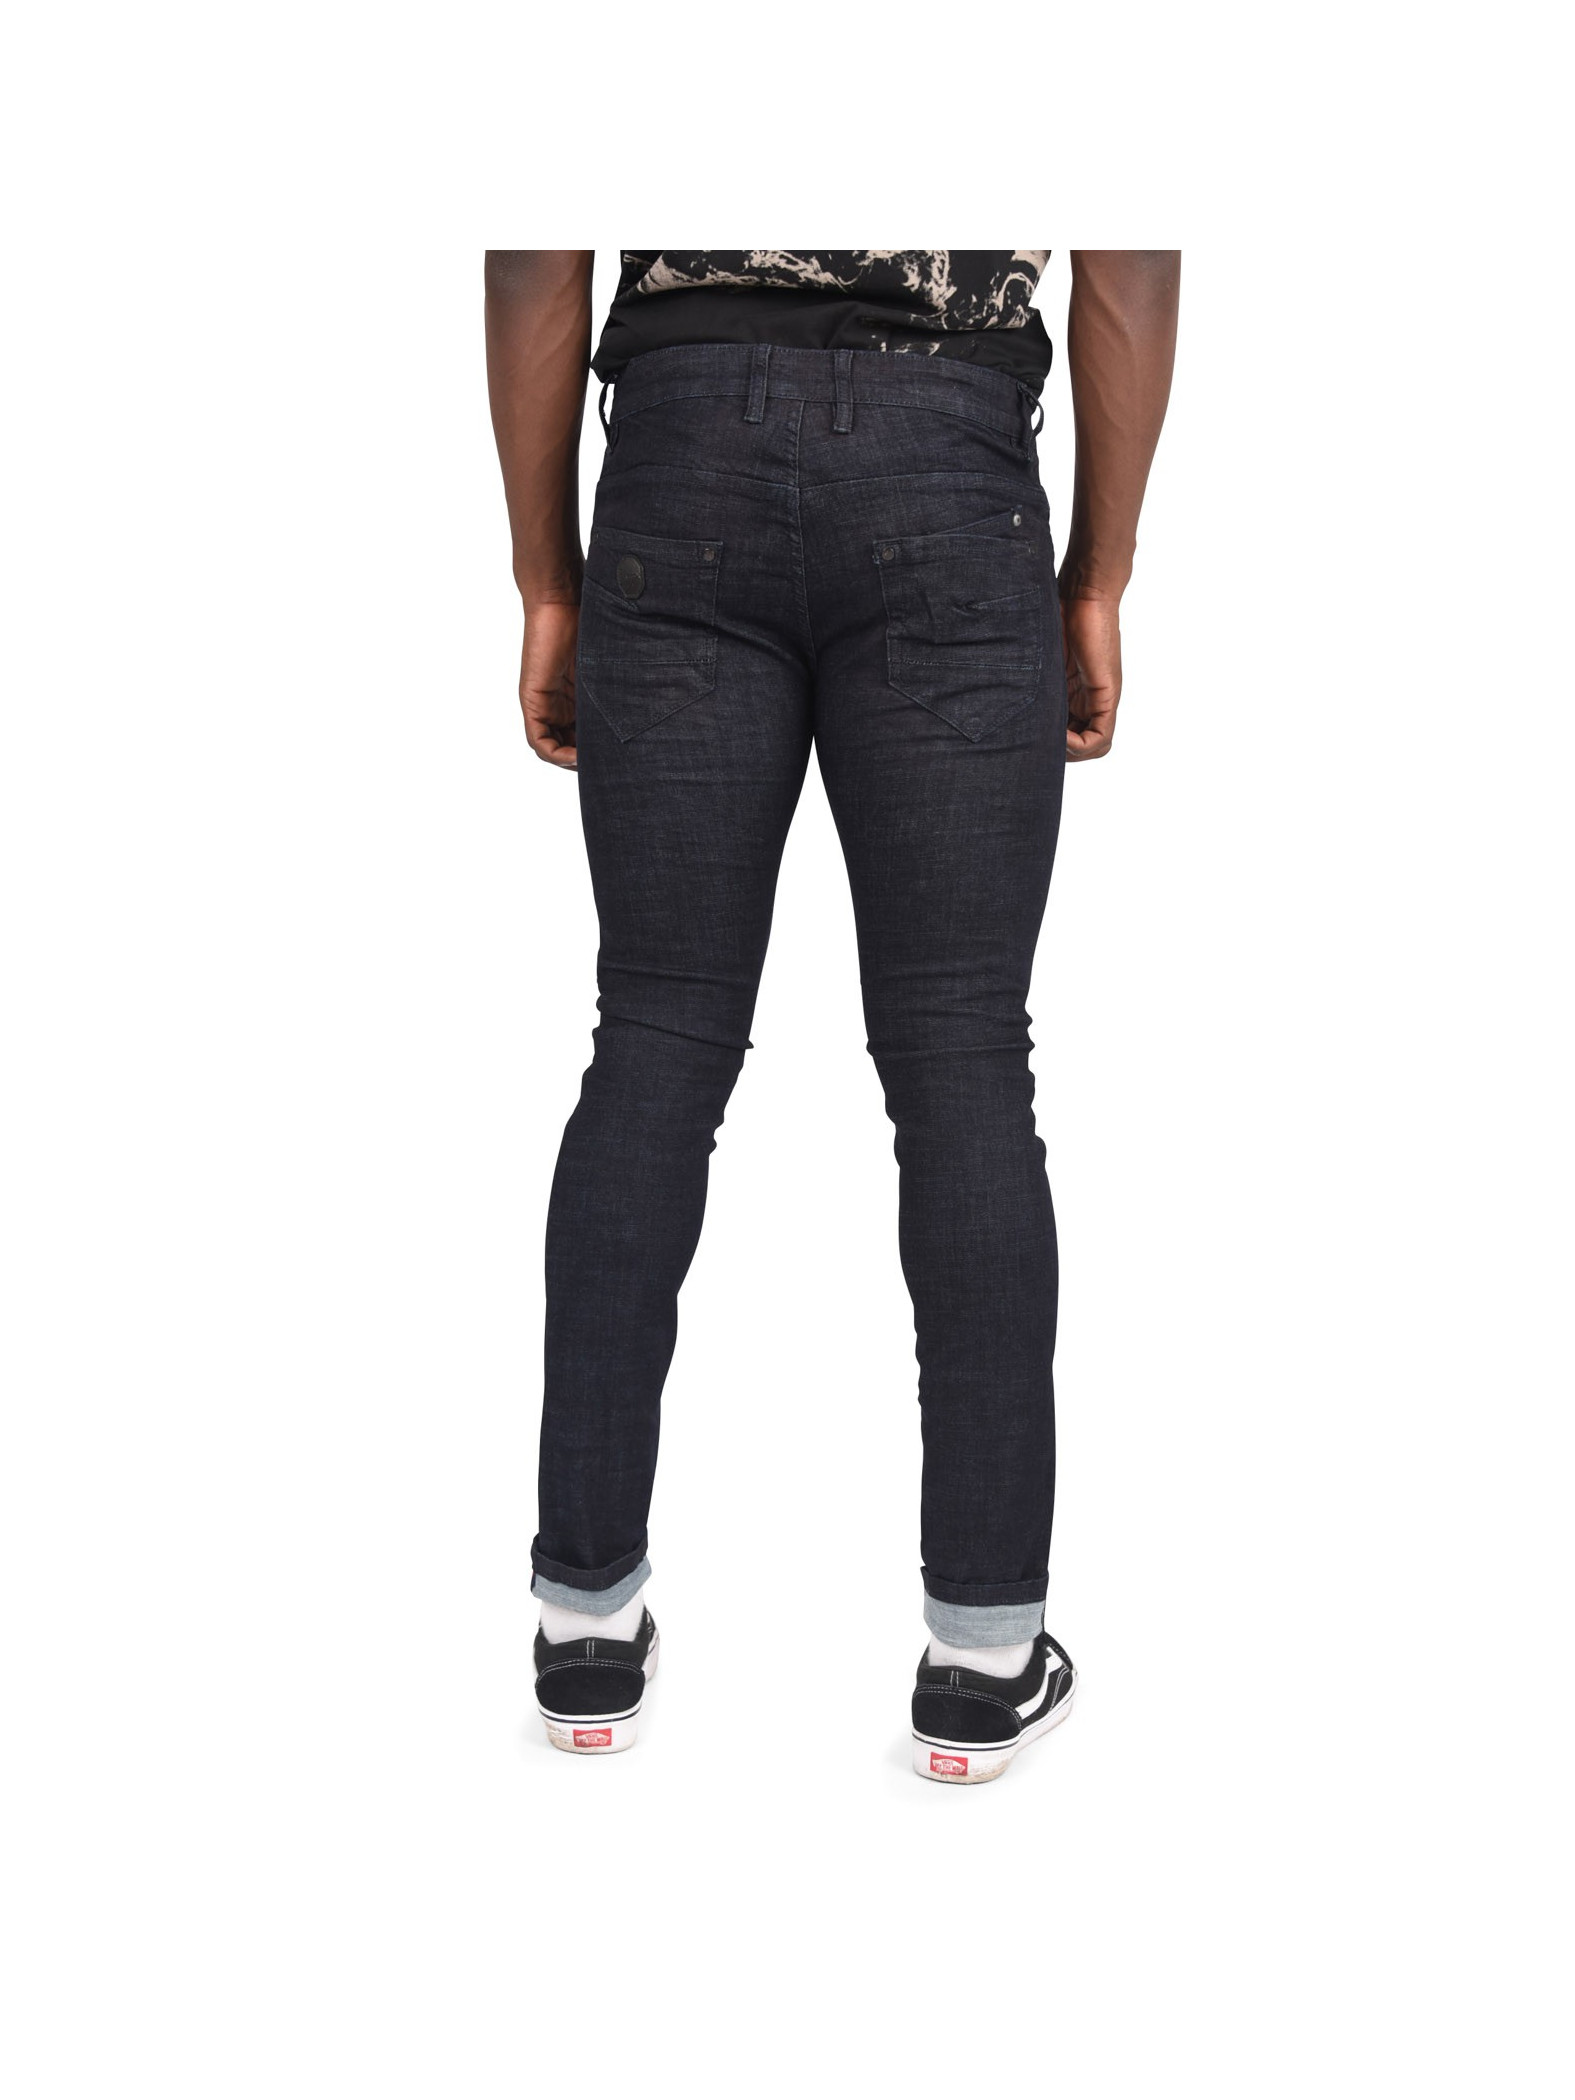 Men's basic slim navy blue jeans Project X Paris